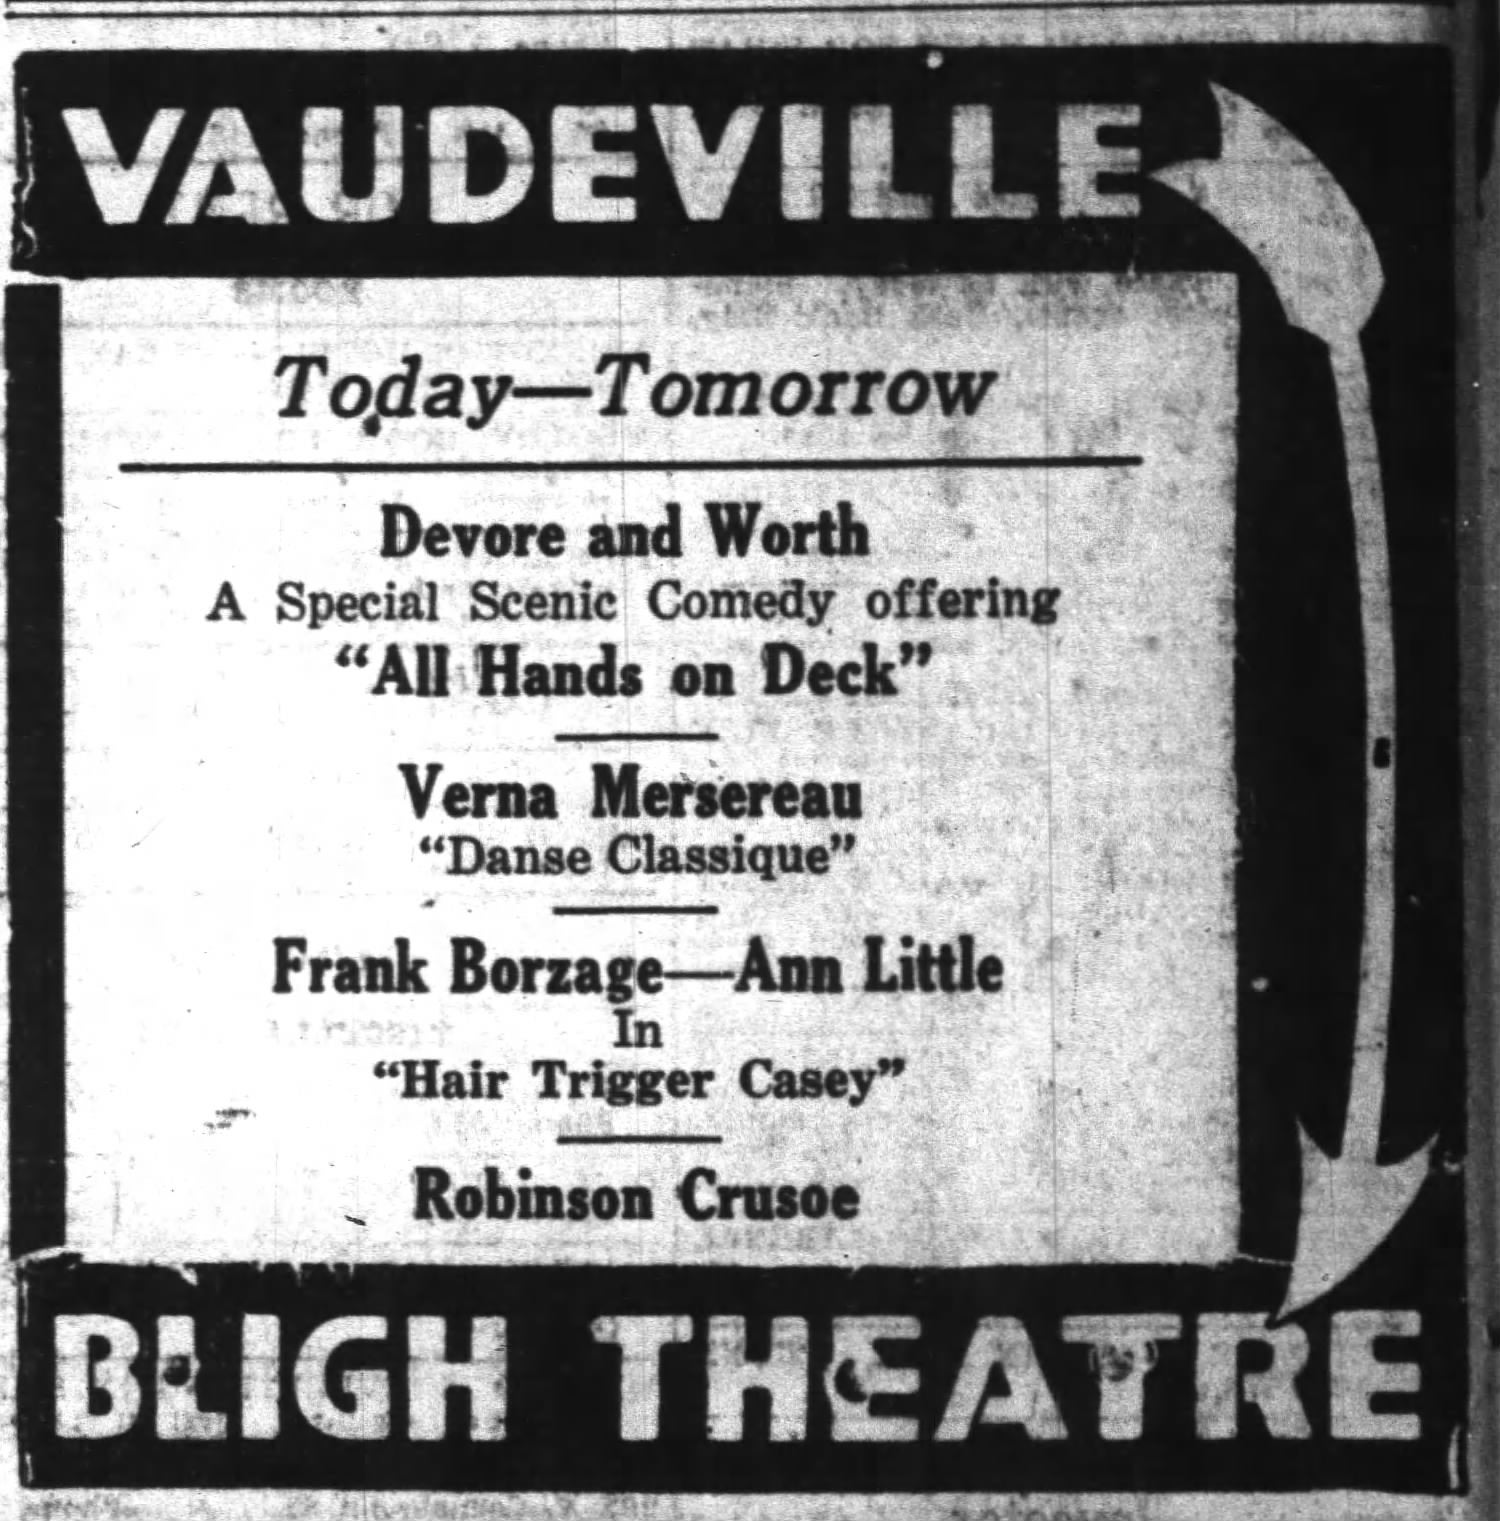 Variety programming at the Bligh, 1922